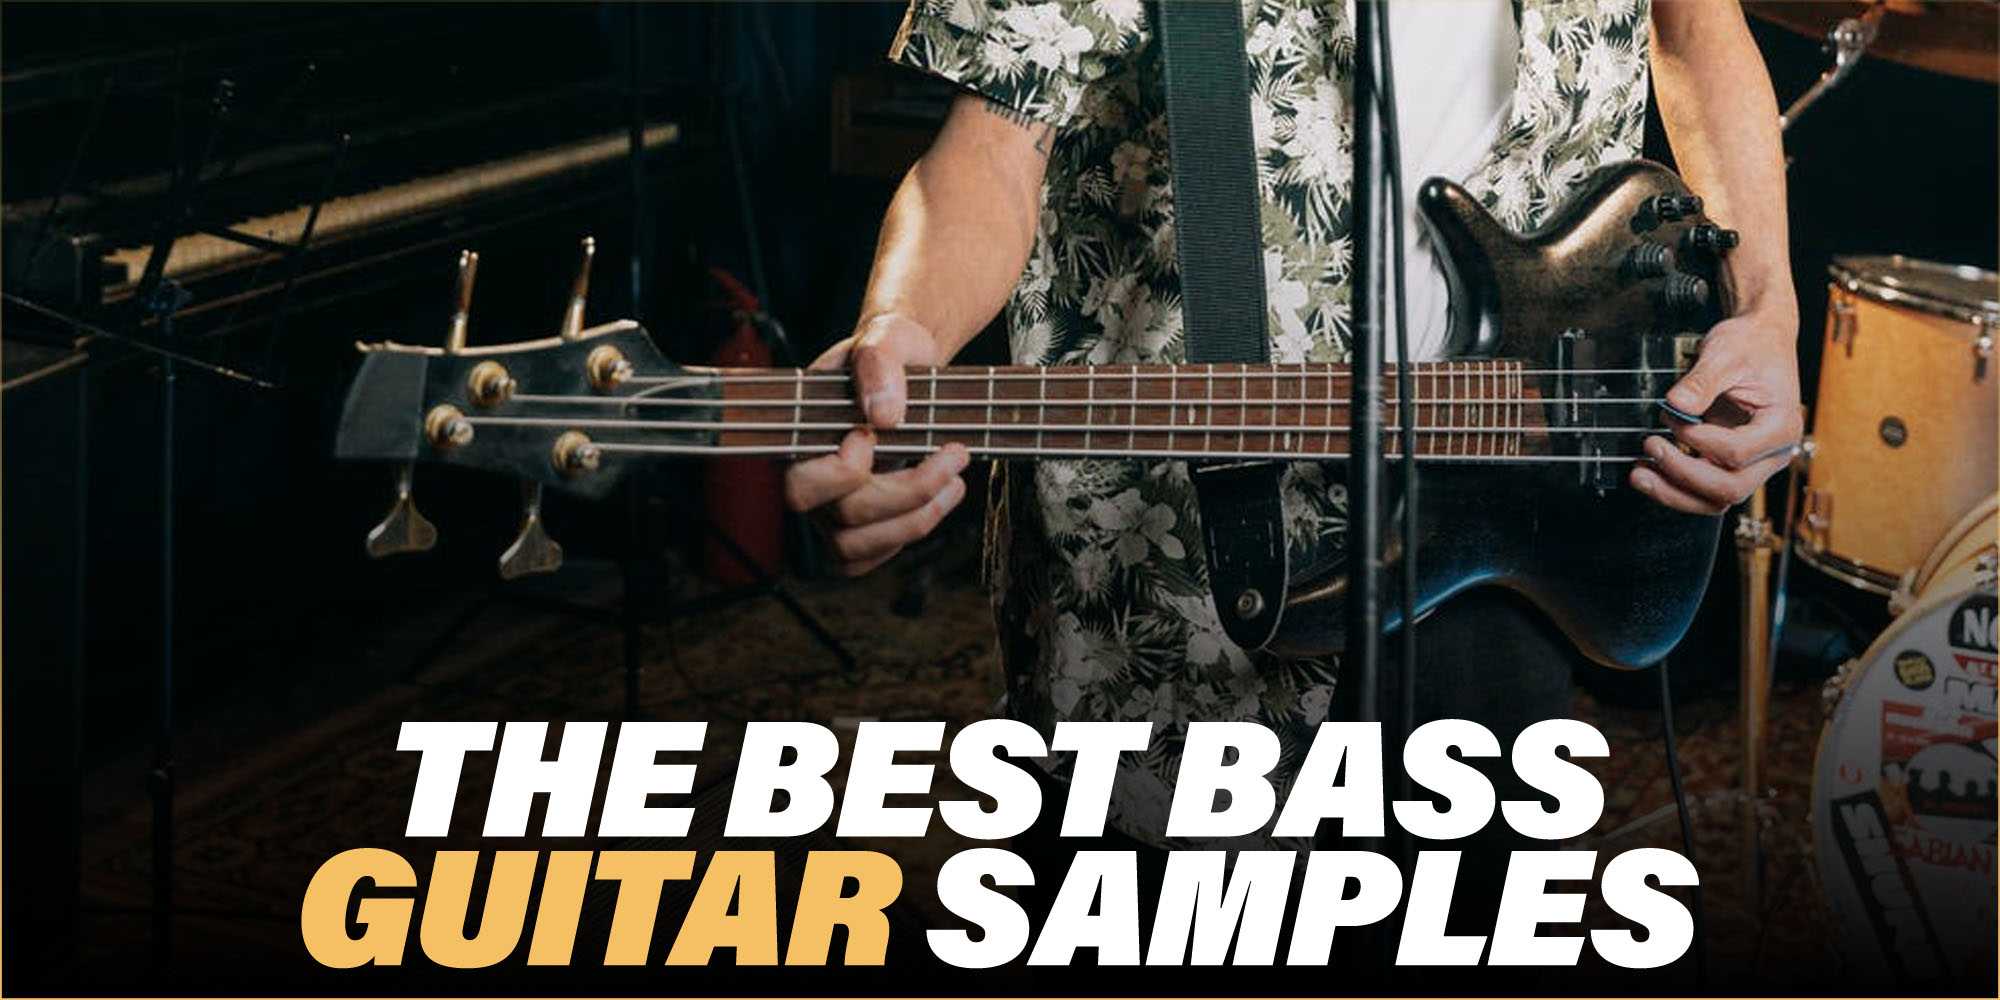 The best bass guitar samples